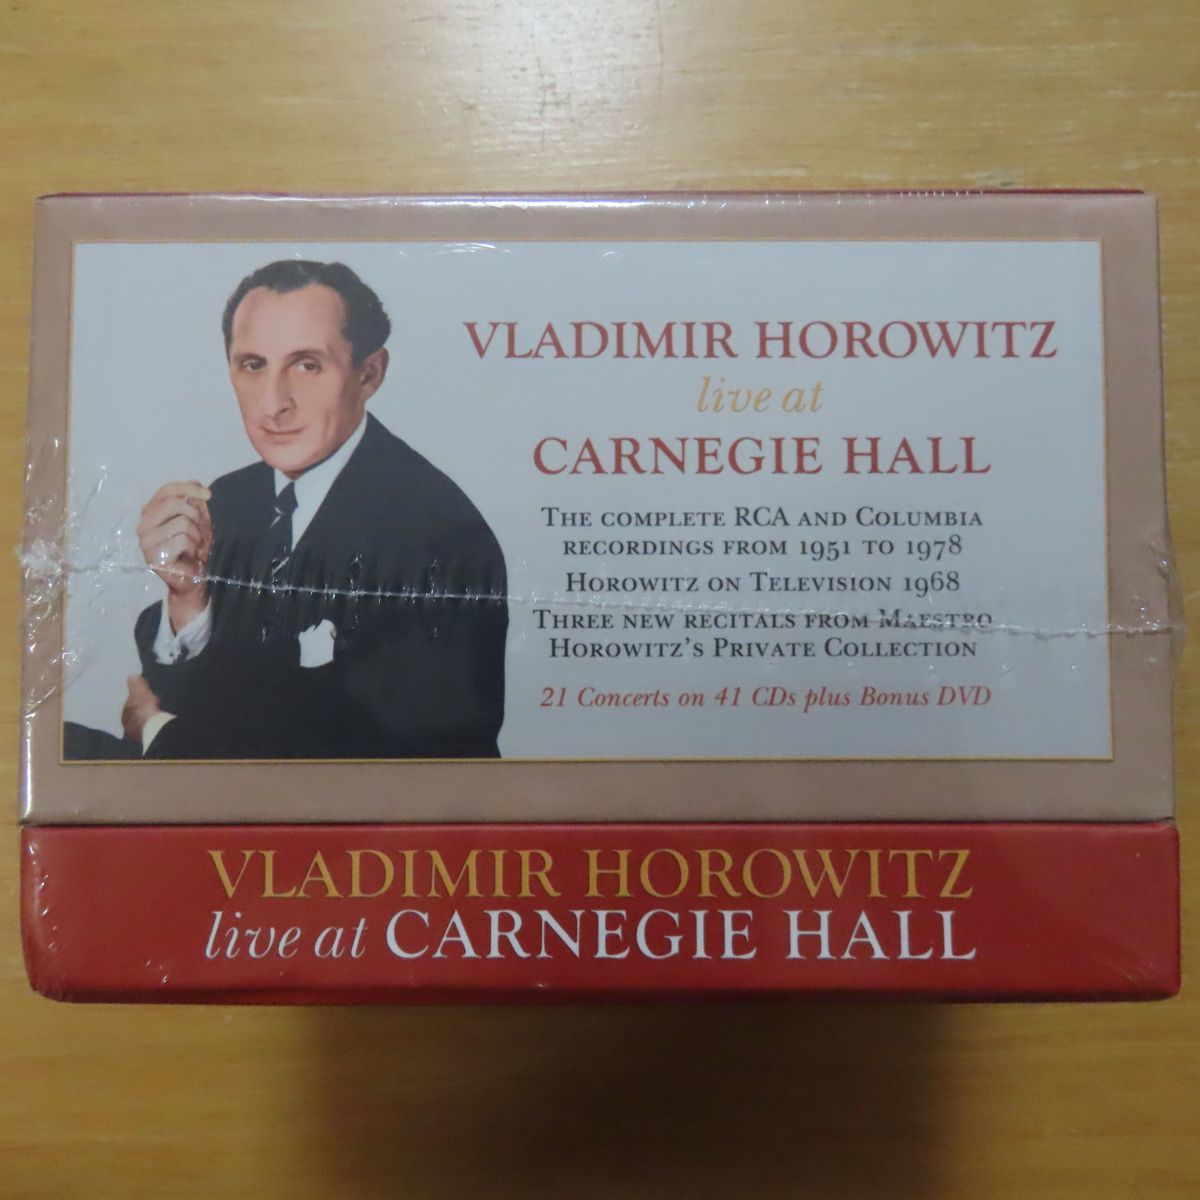 34064791;【未開封/41CD+DVD BOX】ホロヴィッツ / Vladimir Horowitz live at Carnegie Hall